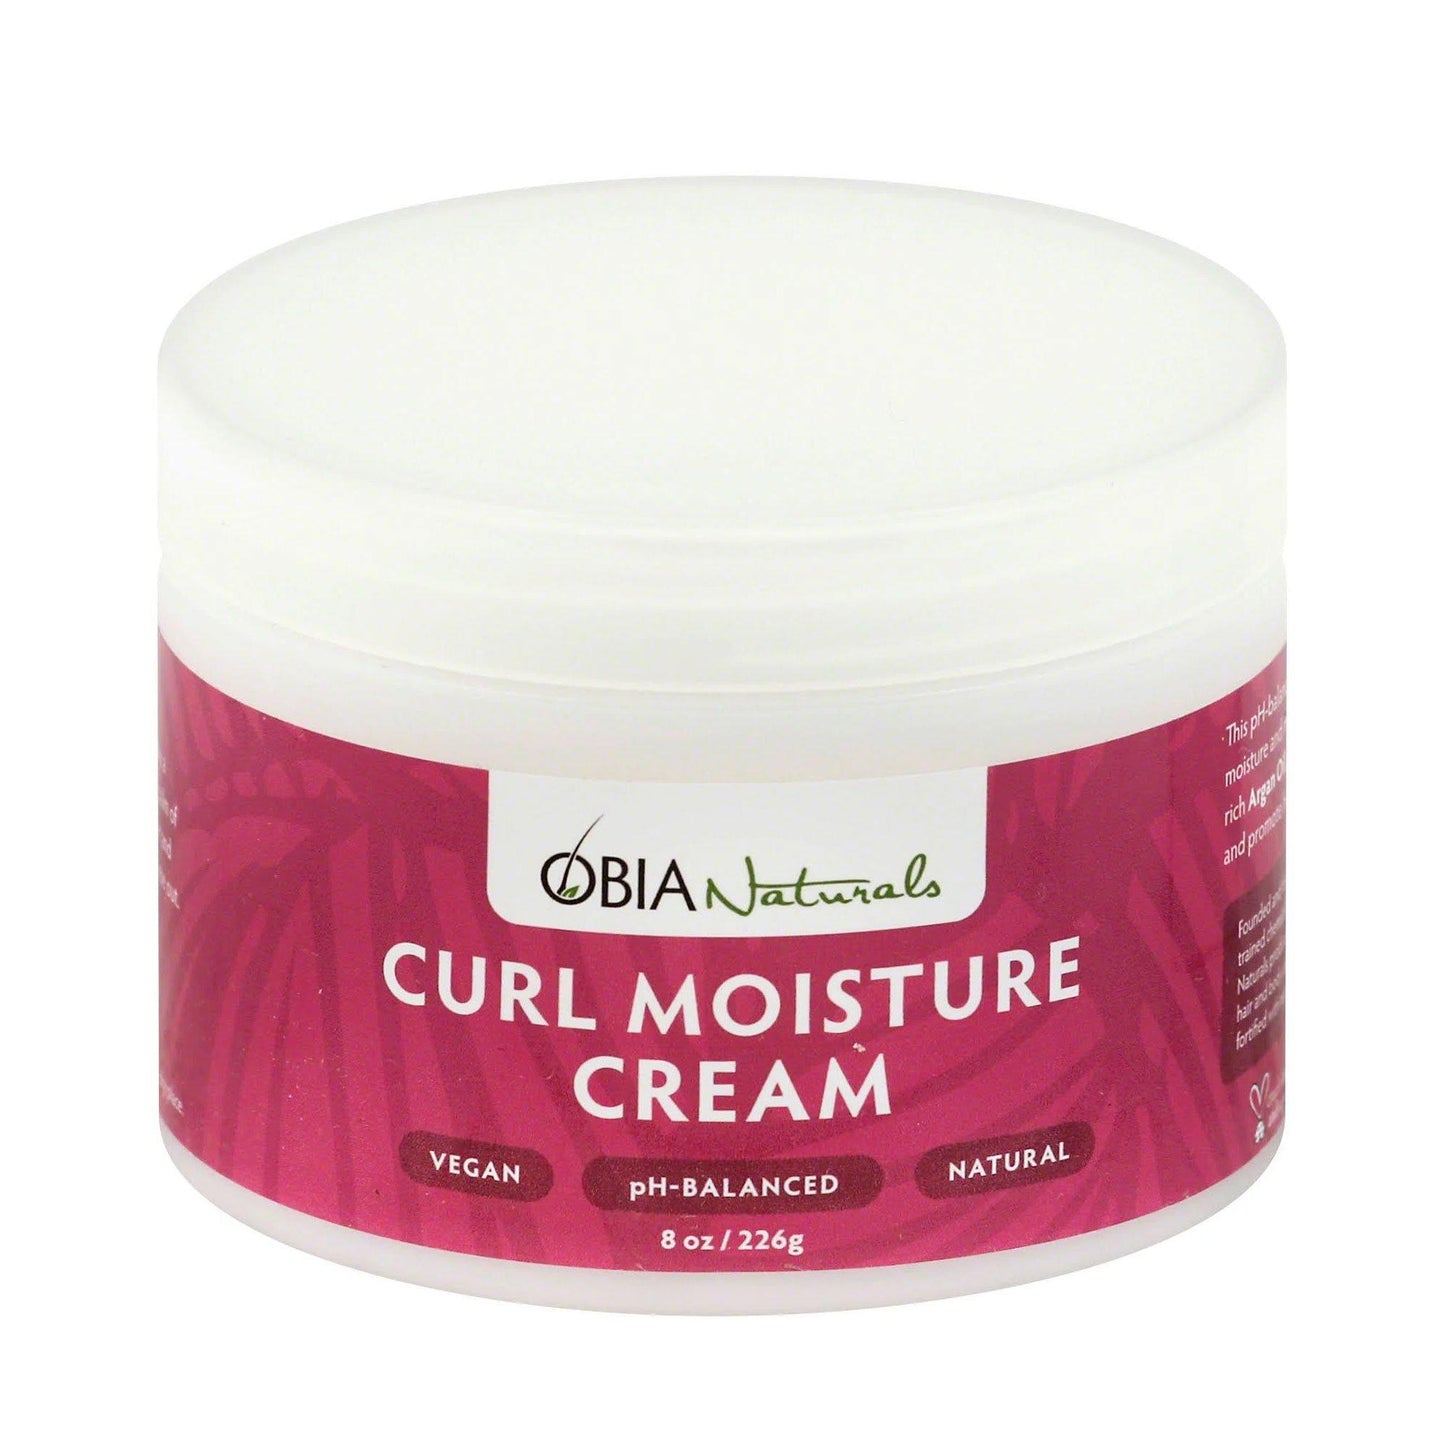 OBIA Natural Curl Moisture Cream